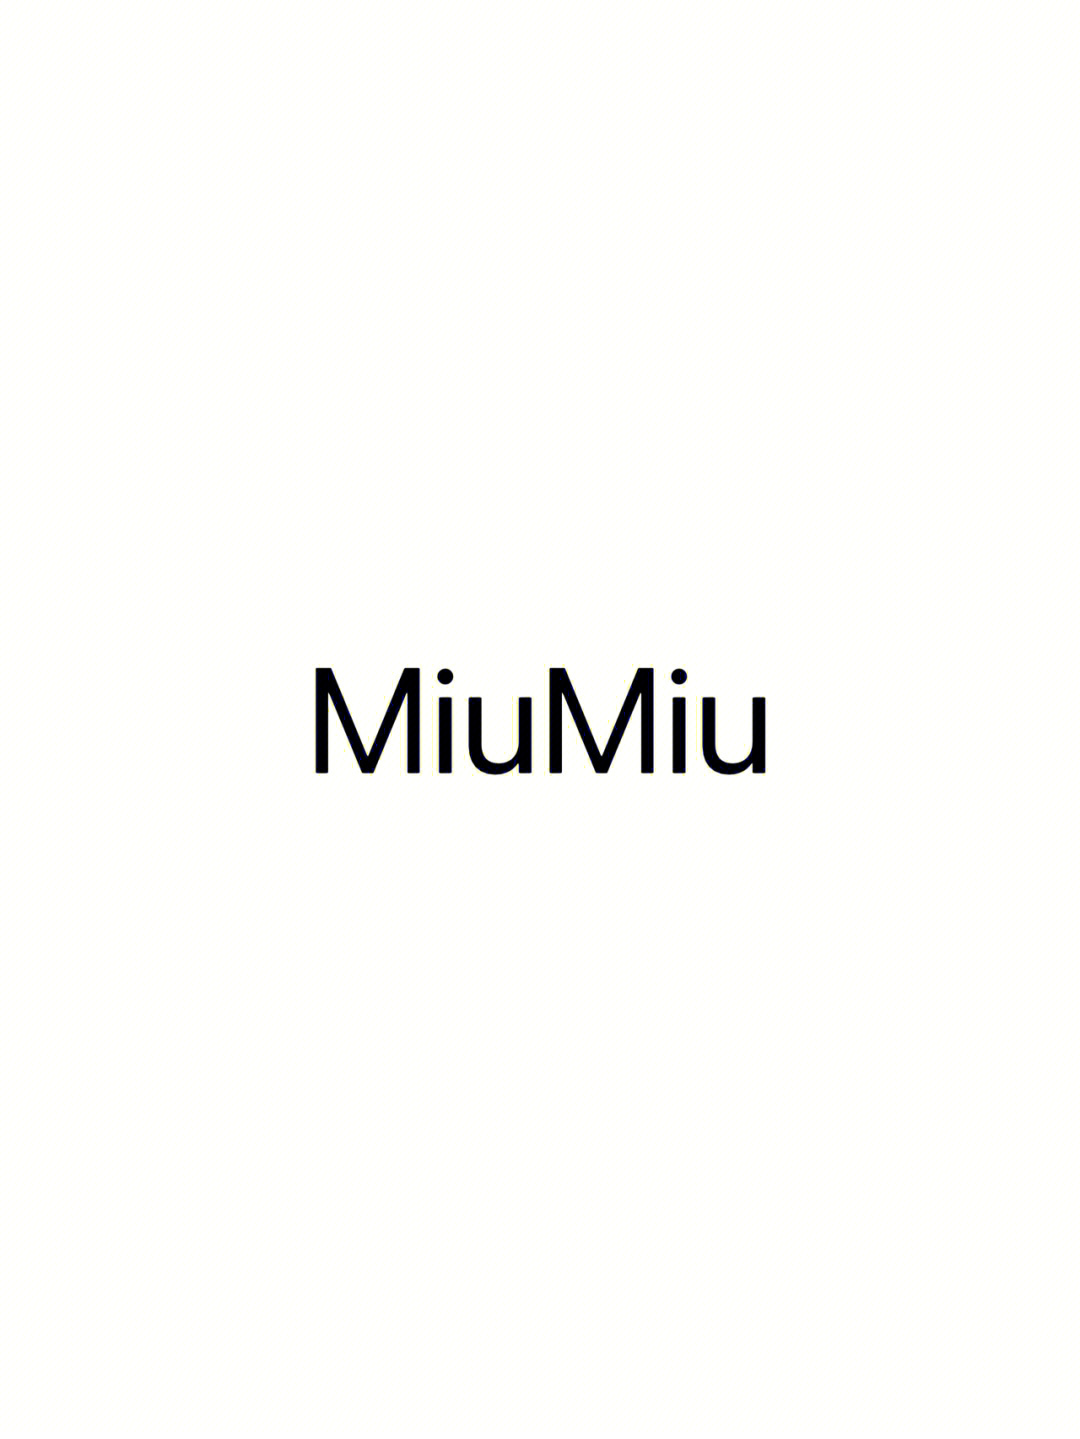 每天认识一个新的时尚品牌miumiu